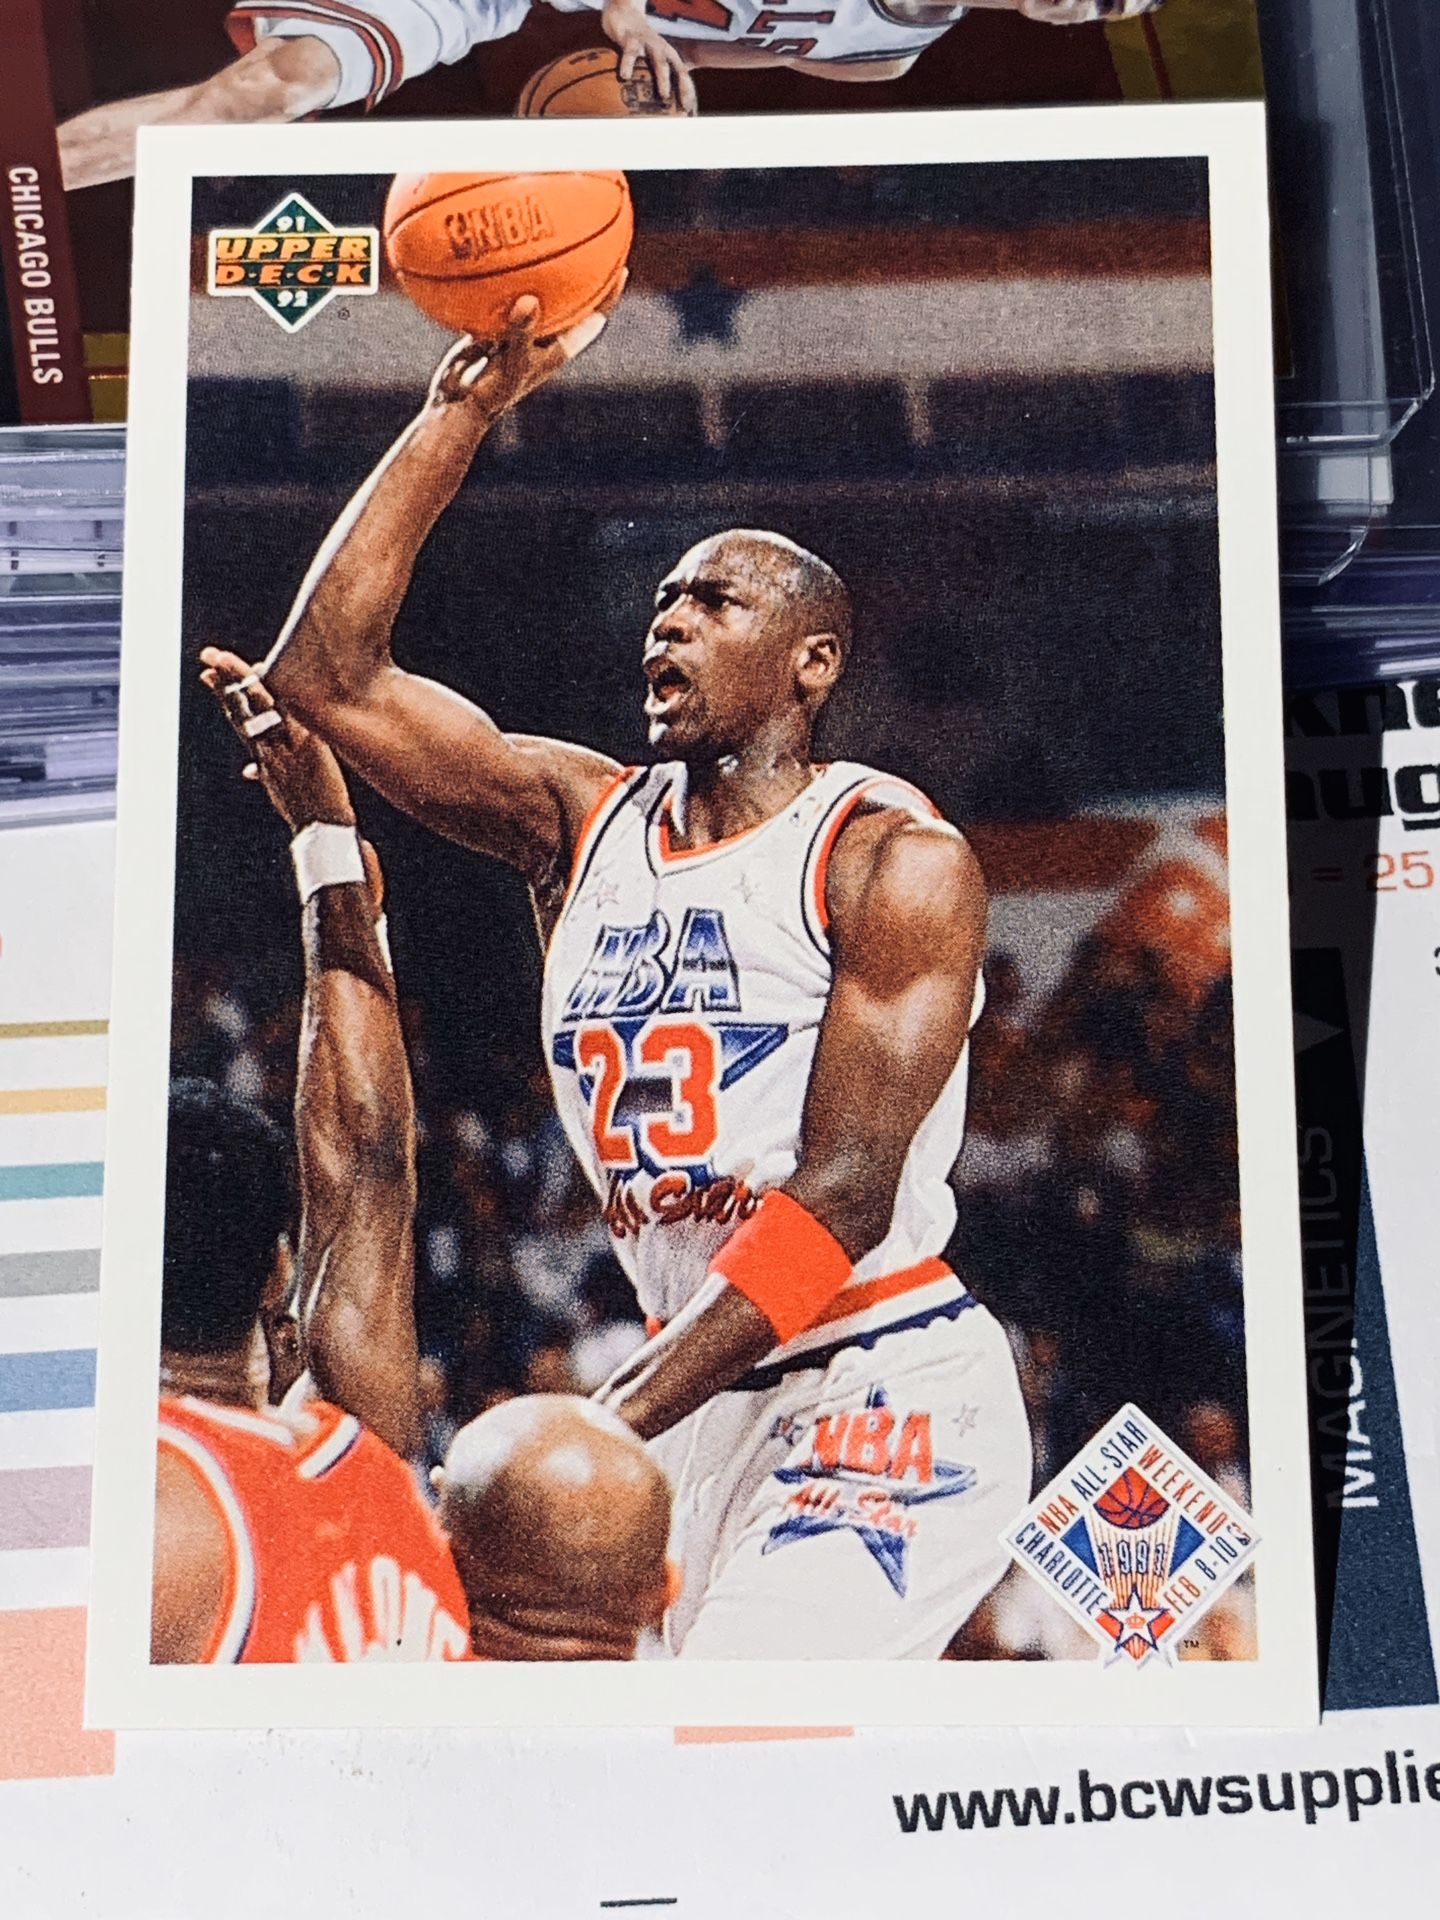 1991 Upper Deck Michael Jordan Card No. 48